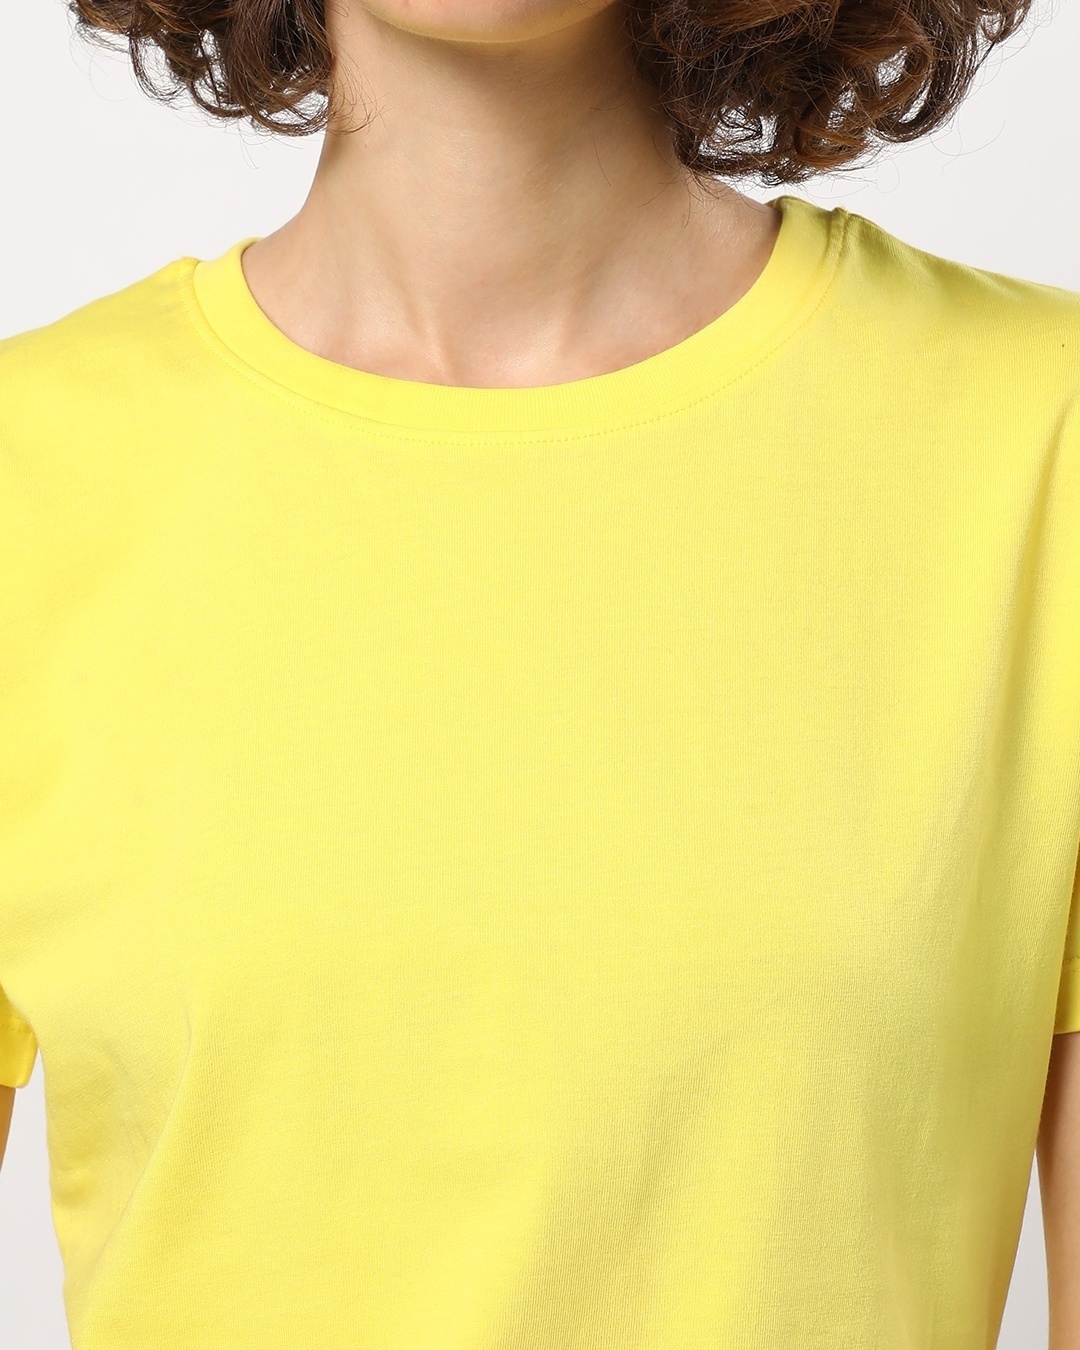 Shop Women's Birthday Yellow T-shirt